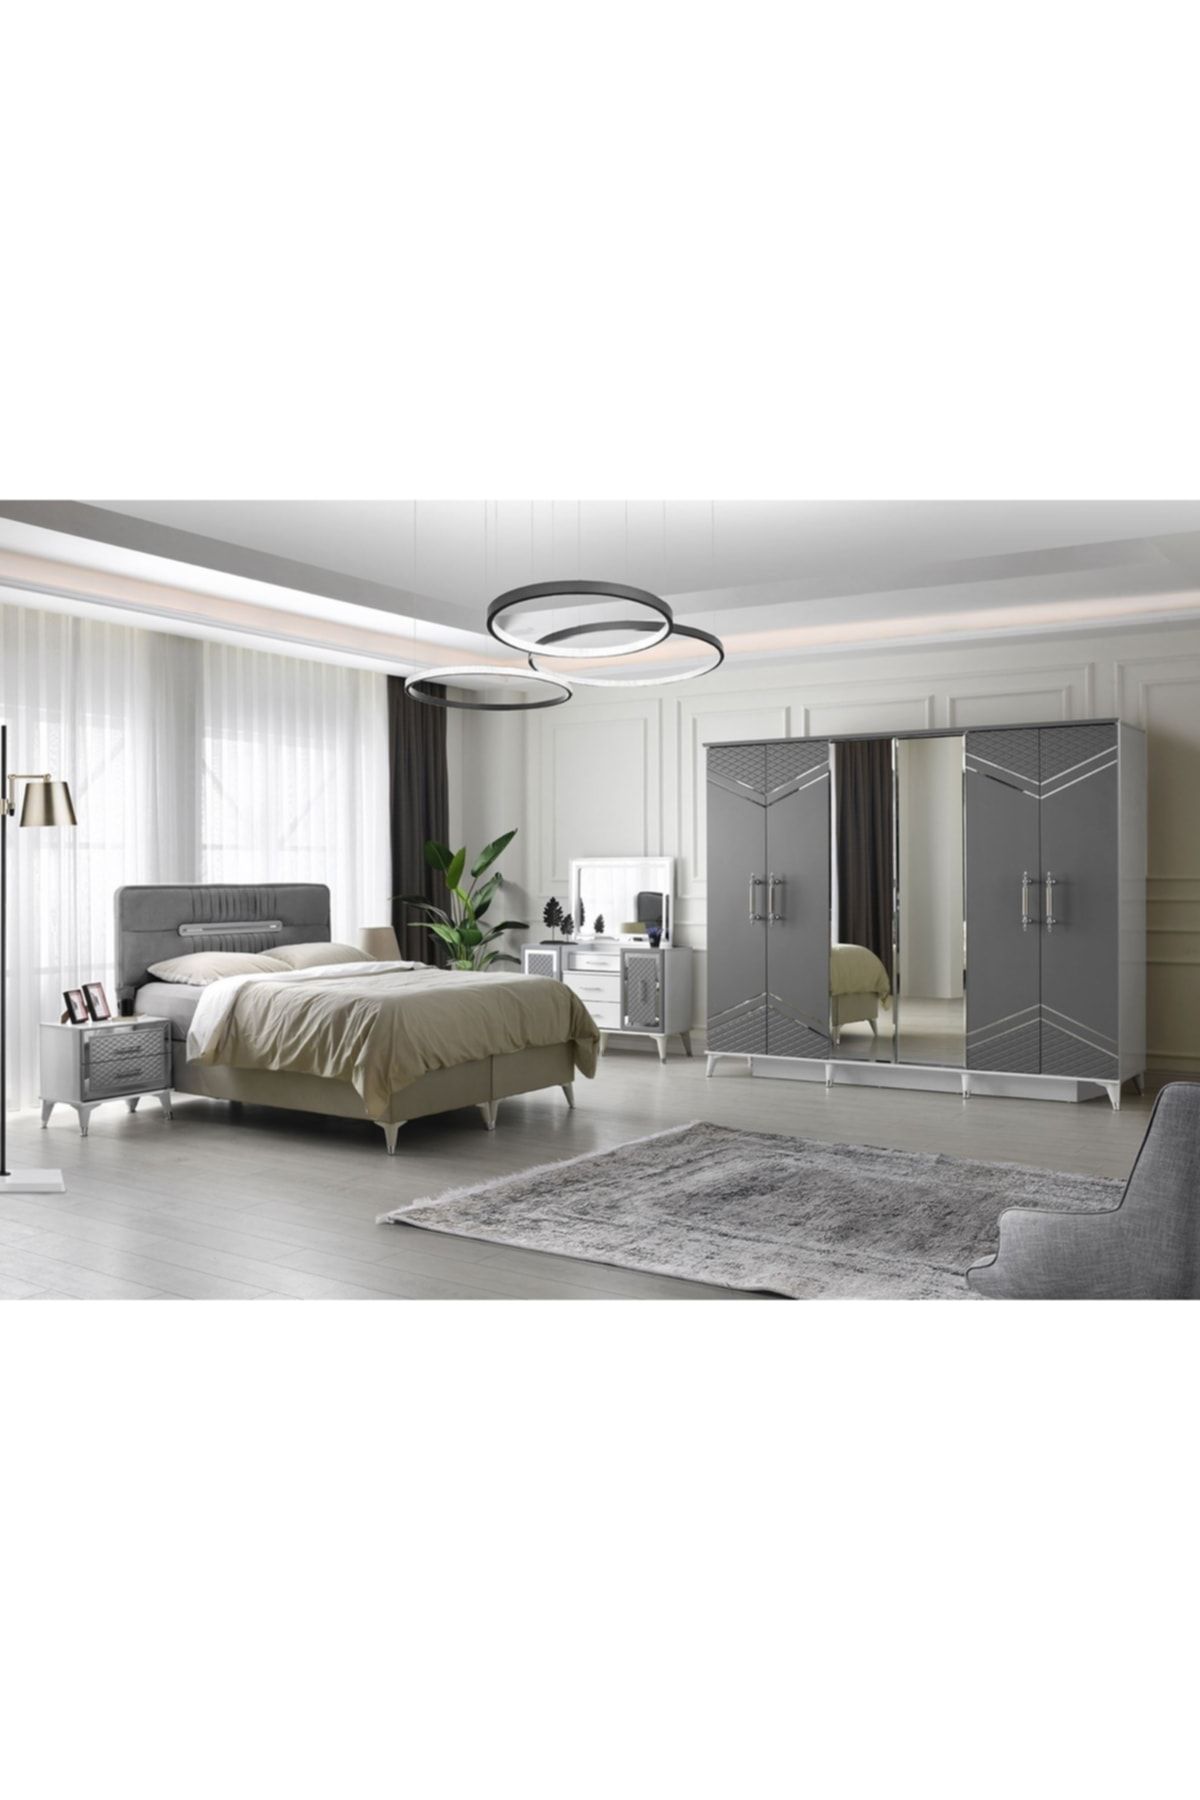 GuneyStore Ücretsiz Montaj Komple Mdf 6 Kapaklı Izmir Gri-beyaz Yatak Odası Takımı Baza Dahil